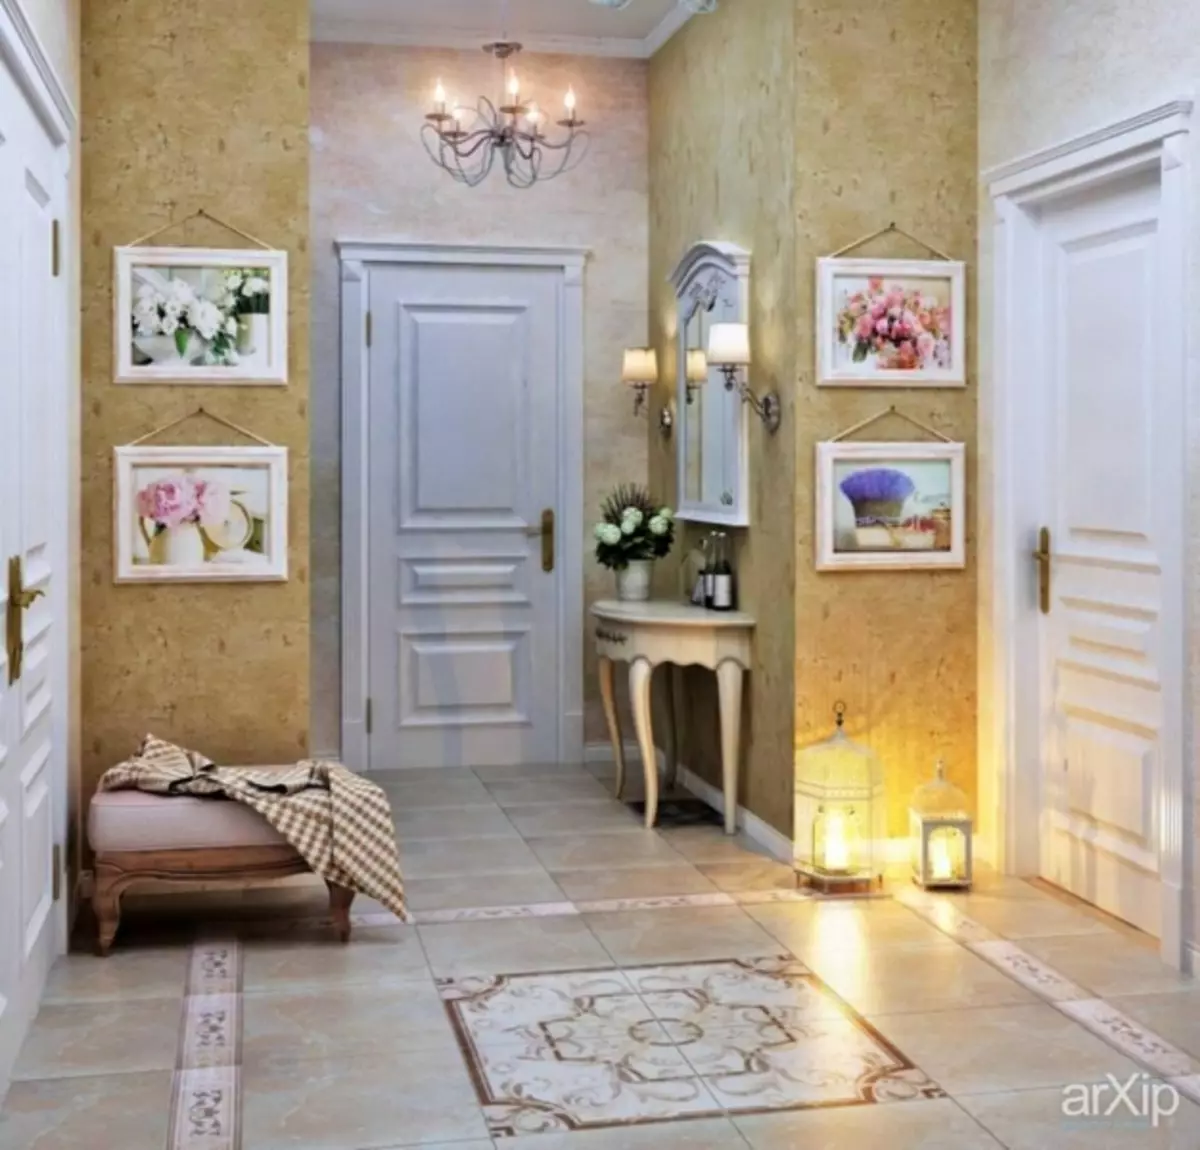 Provence Bakgrund: Foto i inredningen, för köksväggar, sovrum och vardagsrum, i blomma, land och provence samling, barnens följeslagare, i korridoren, video